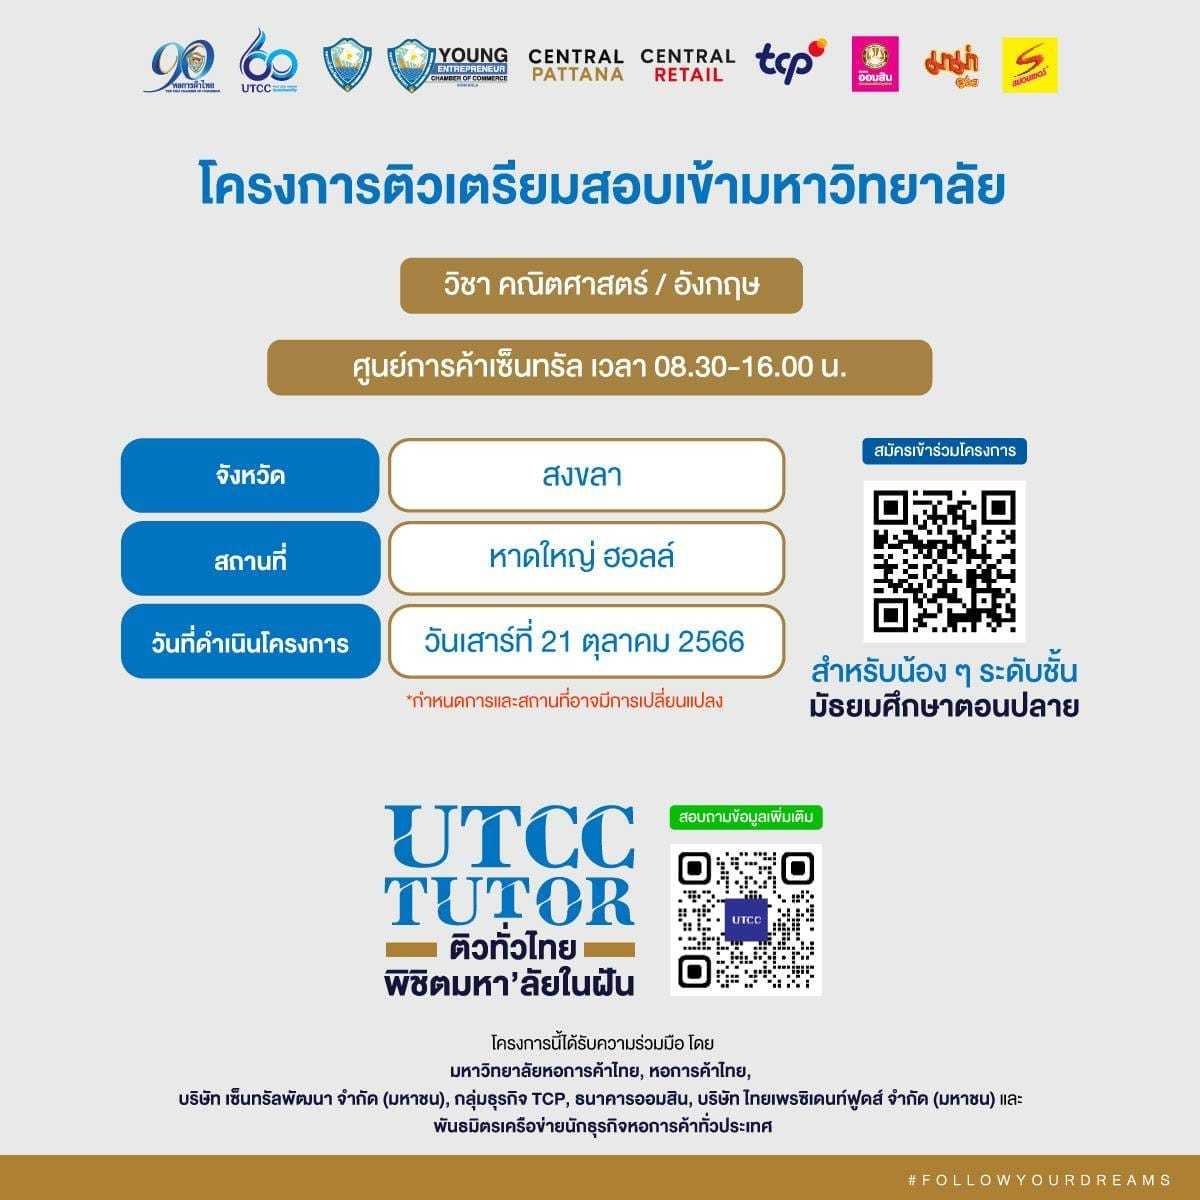 โครงการ “ติวทั่วไทย พิชิตมหา’ลัยในฝัน” เน้นเทคนิค เน้นเอาไปใช้ได้จริง ทำข้อสอบอย่างมั่นใจ